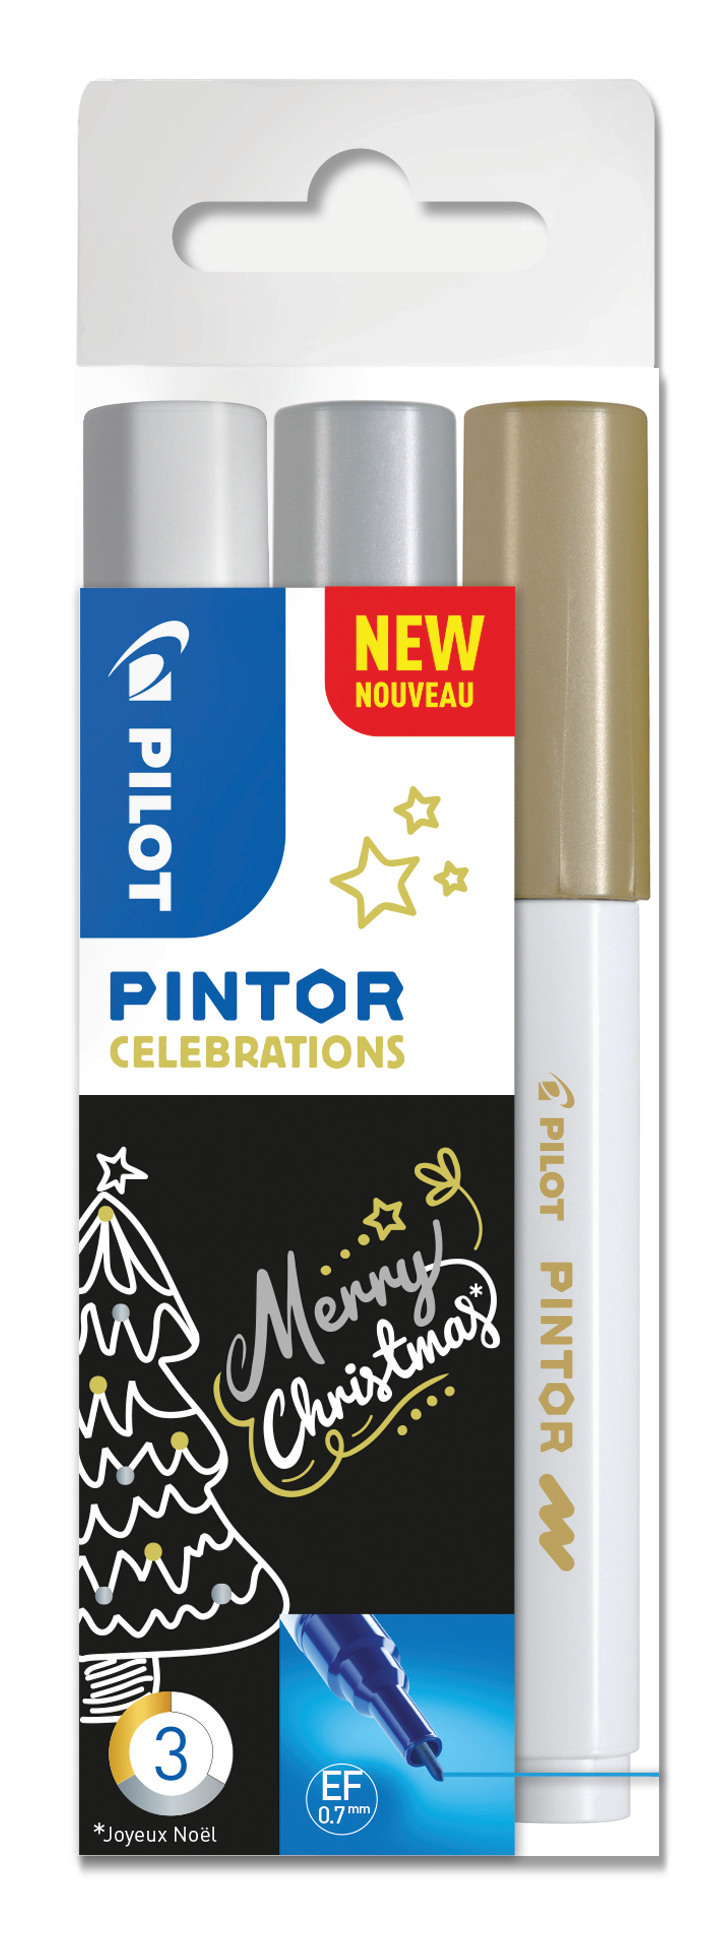 PILOT Marker Pintor X-MAS S3/0537526 gold, silber, weiss 3 Stück